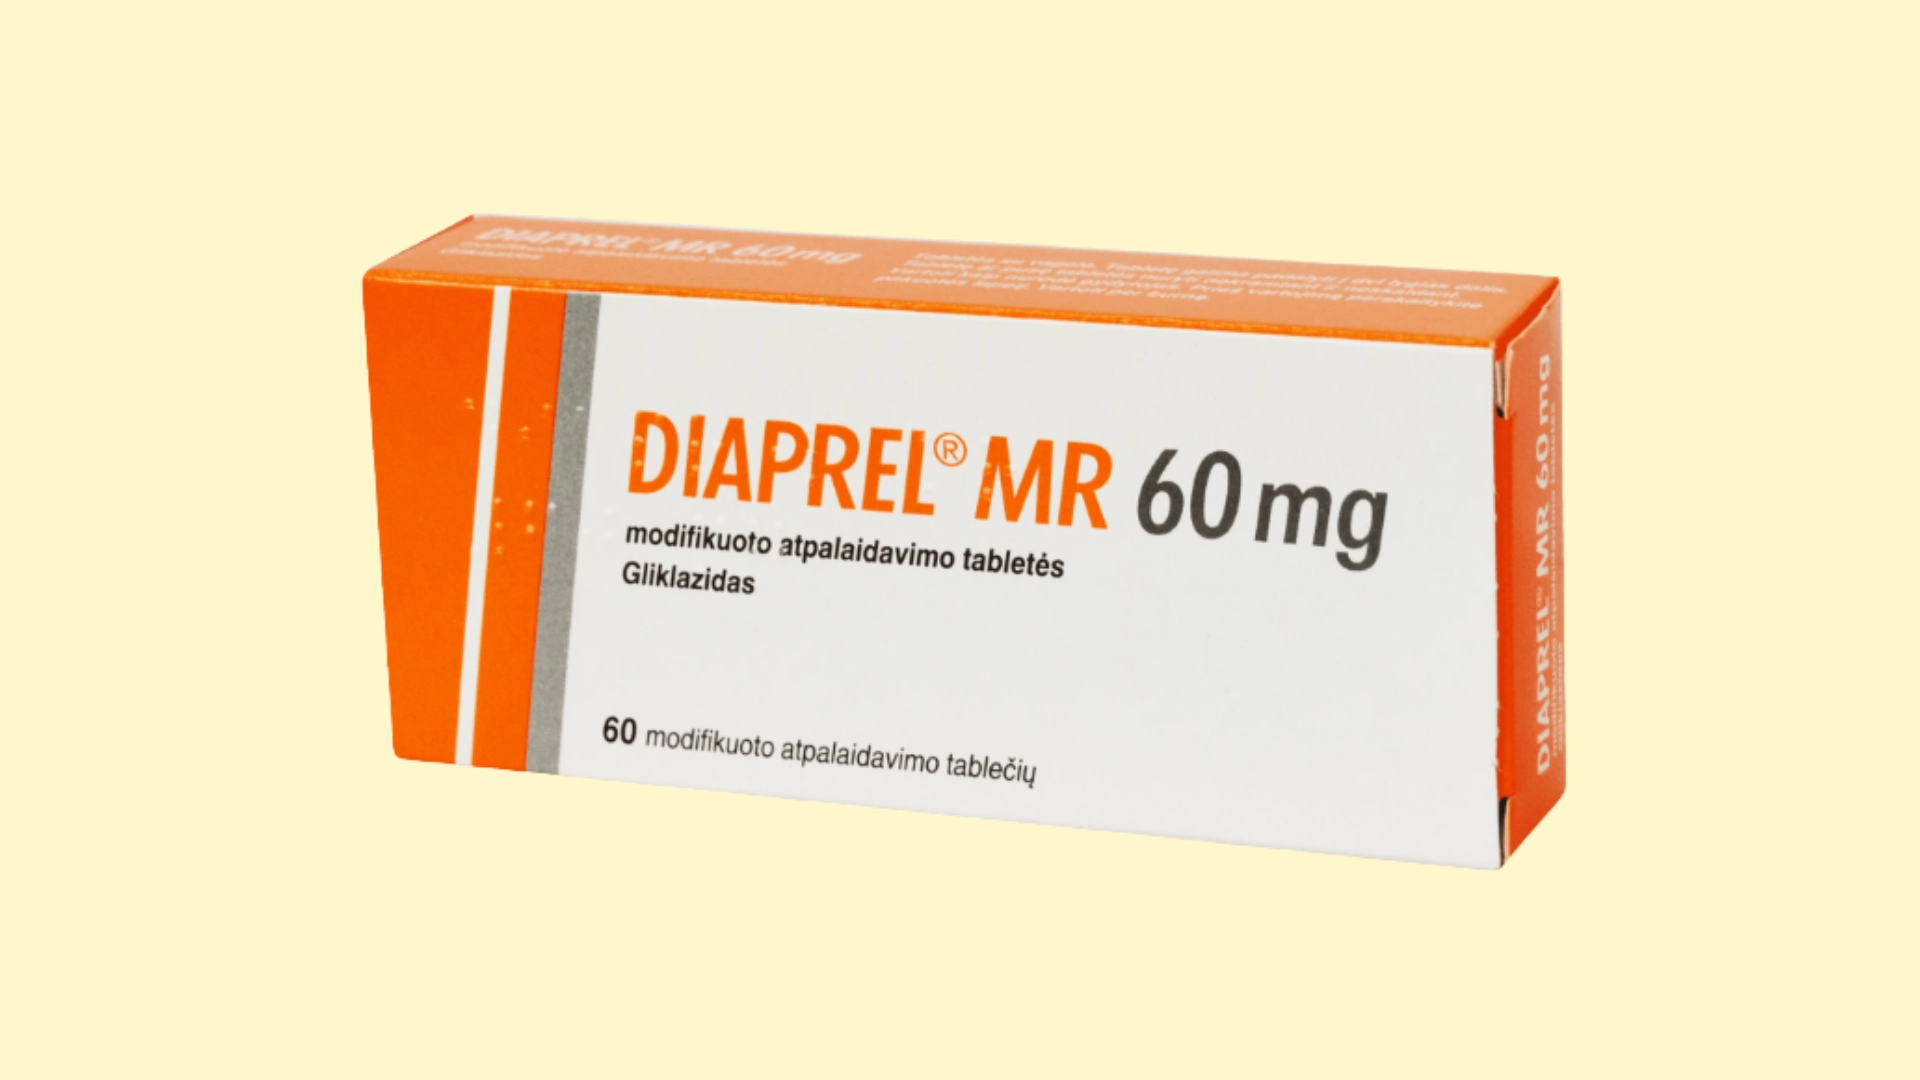 Diaprel MR E recepta  recepta online z konsultacją | cena  dawkowanie  przeciwwskazania